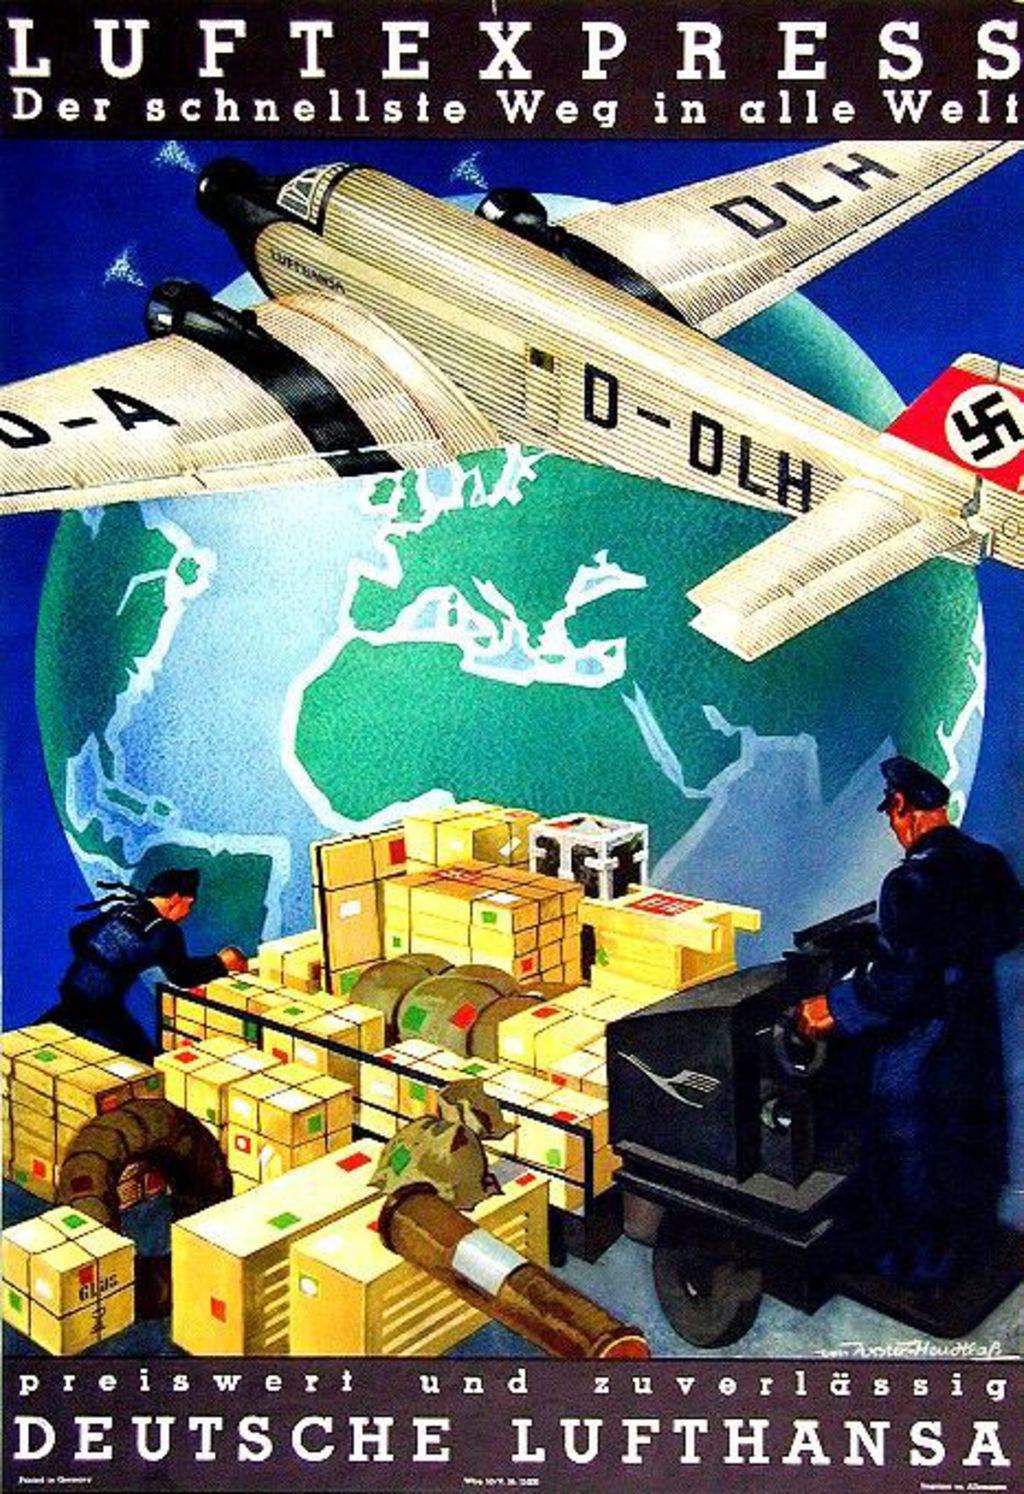 Exponat: Plakat: Luftexpress - Der schnellste Weg in alle Welt, 1930er Jahre